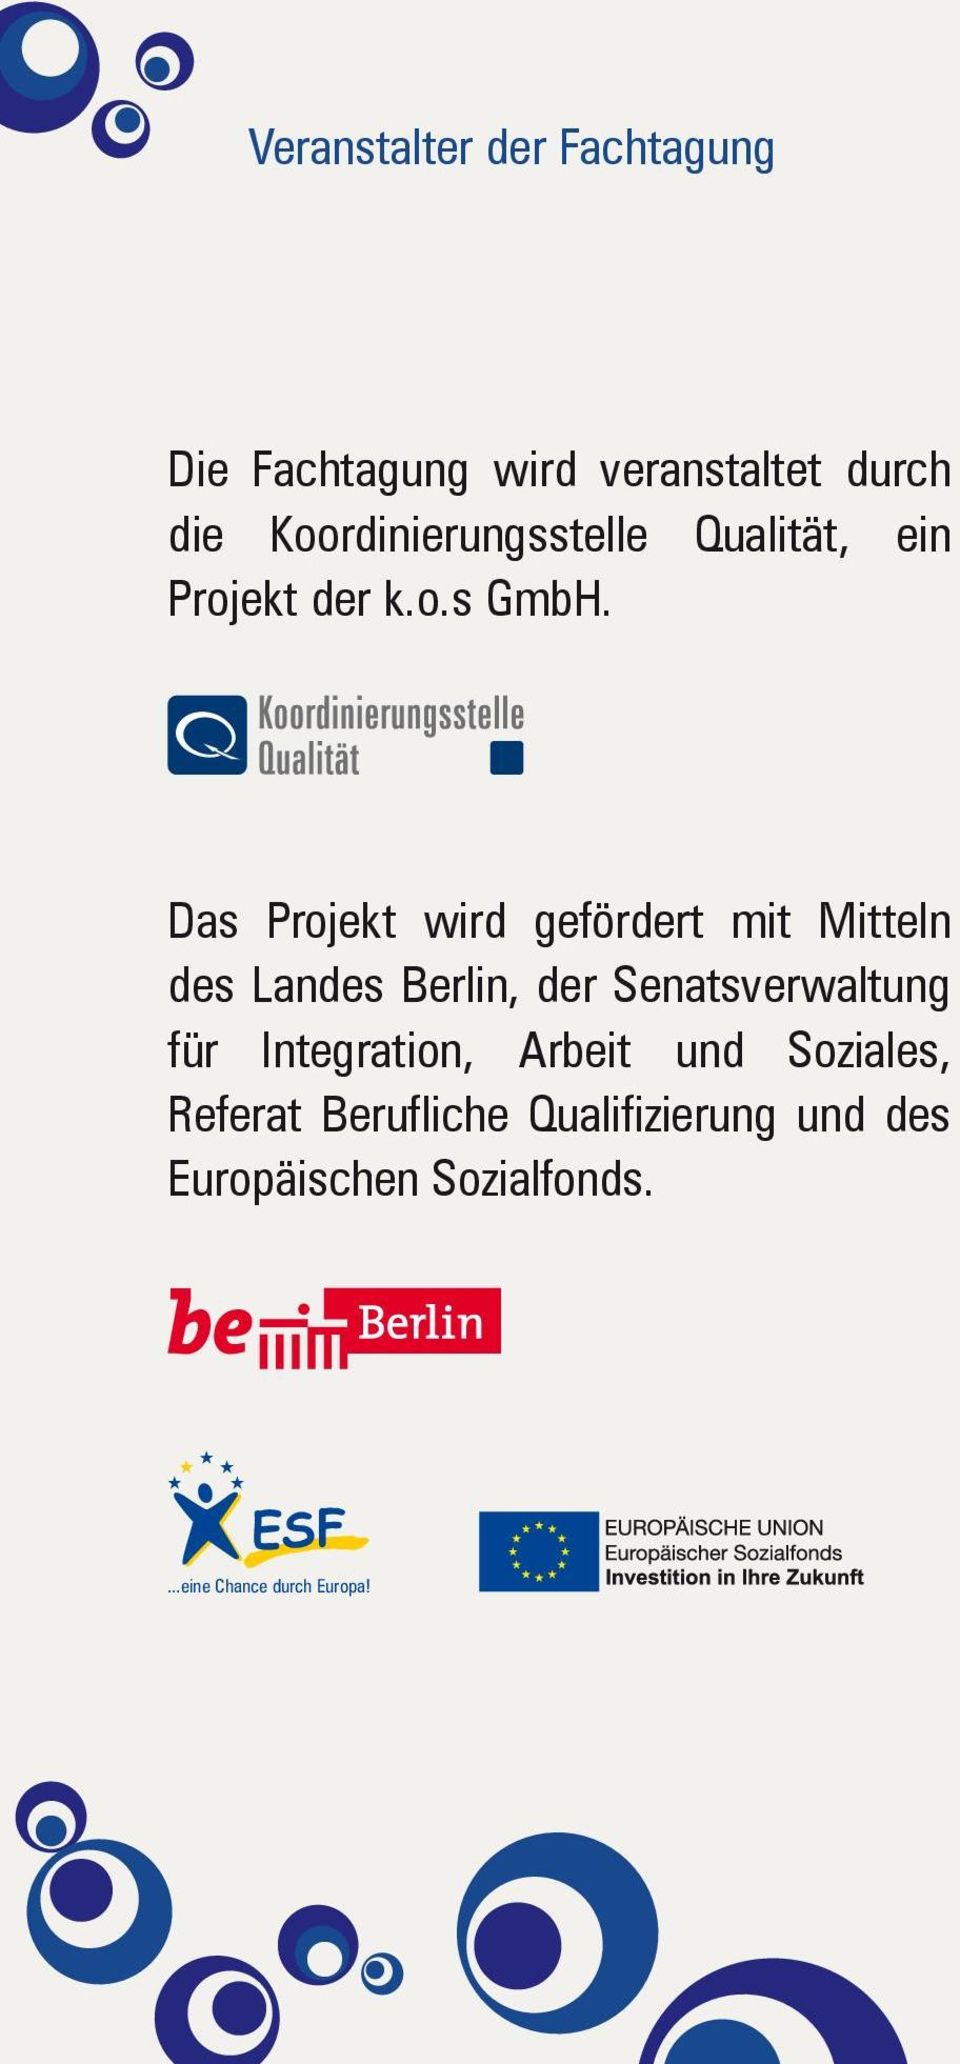 Das Projekt wird gefördert mit Mitteln des Landes Berlin, der Senatsverwaltung für